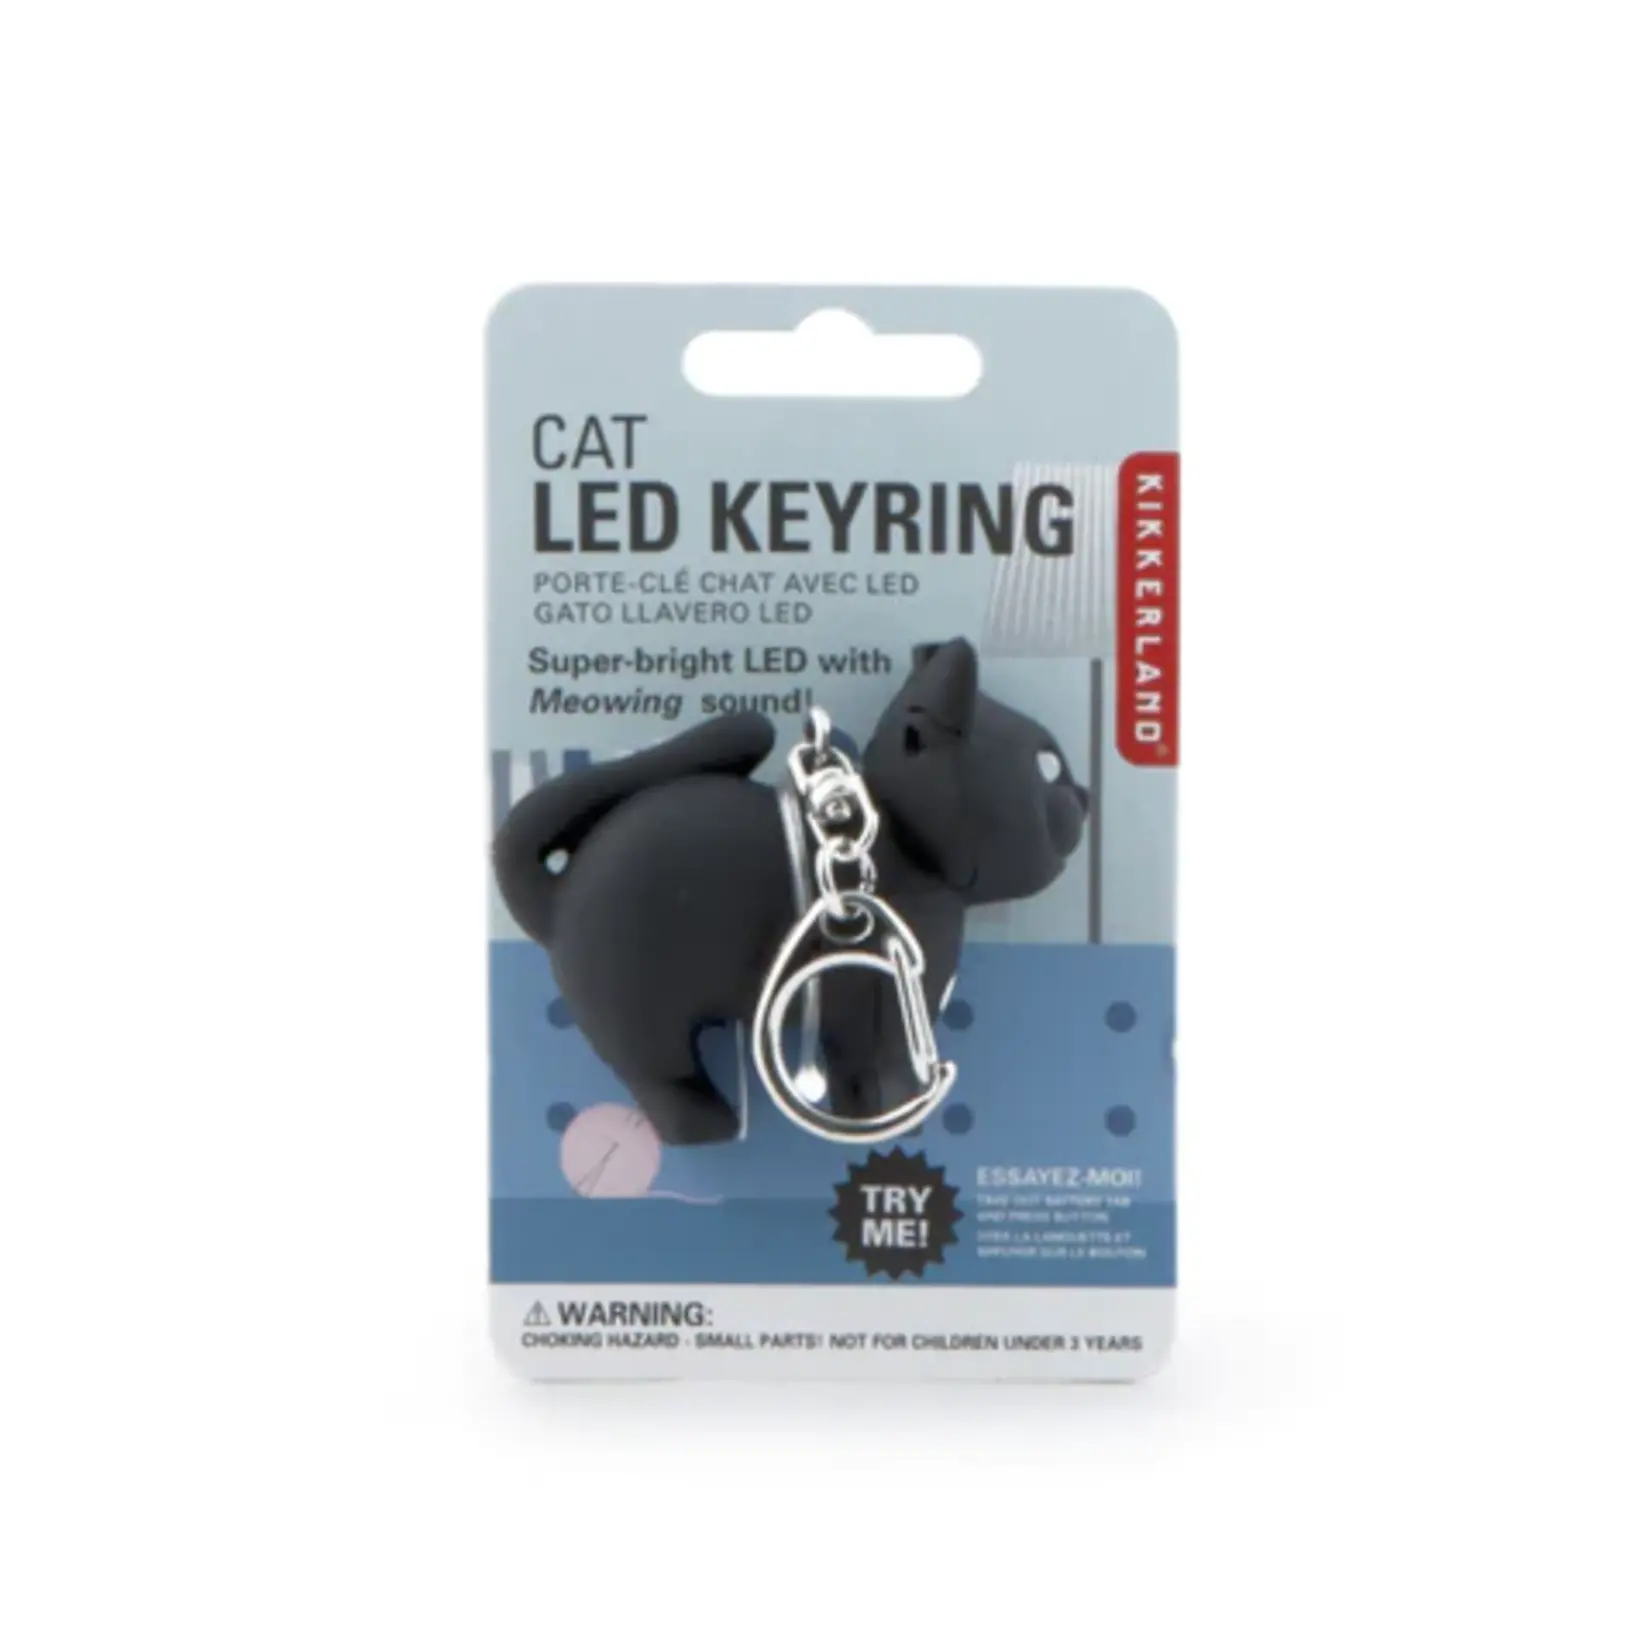 Kikkerkand Cat LED Keyring